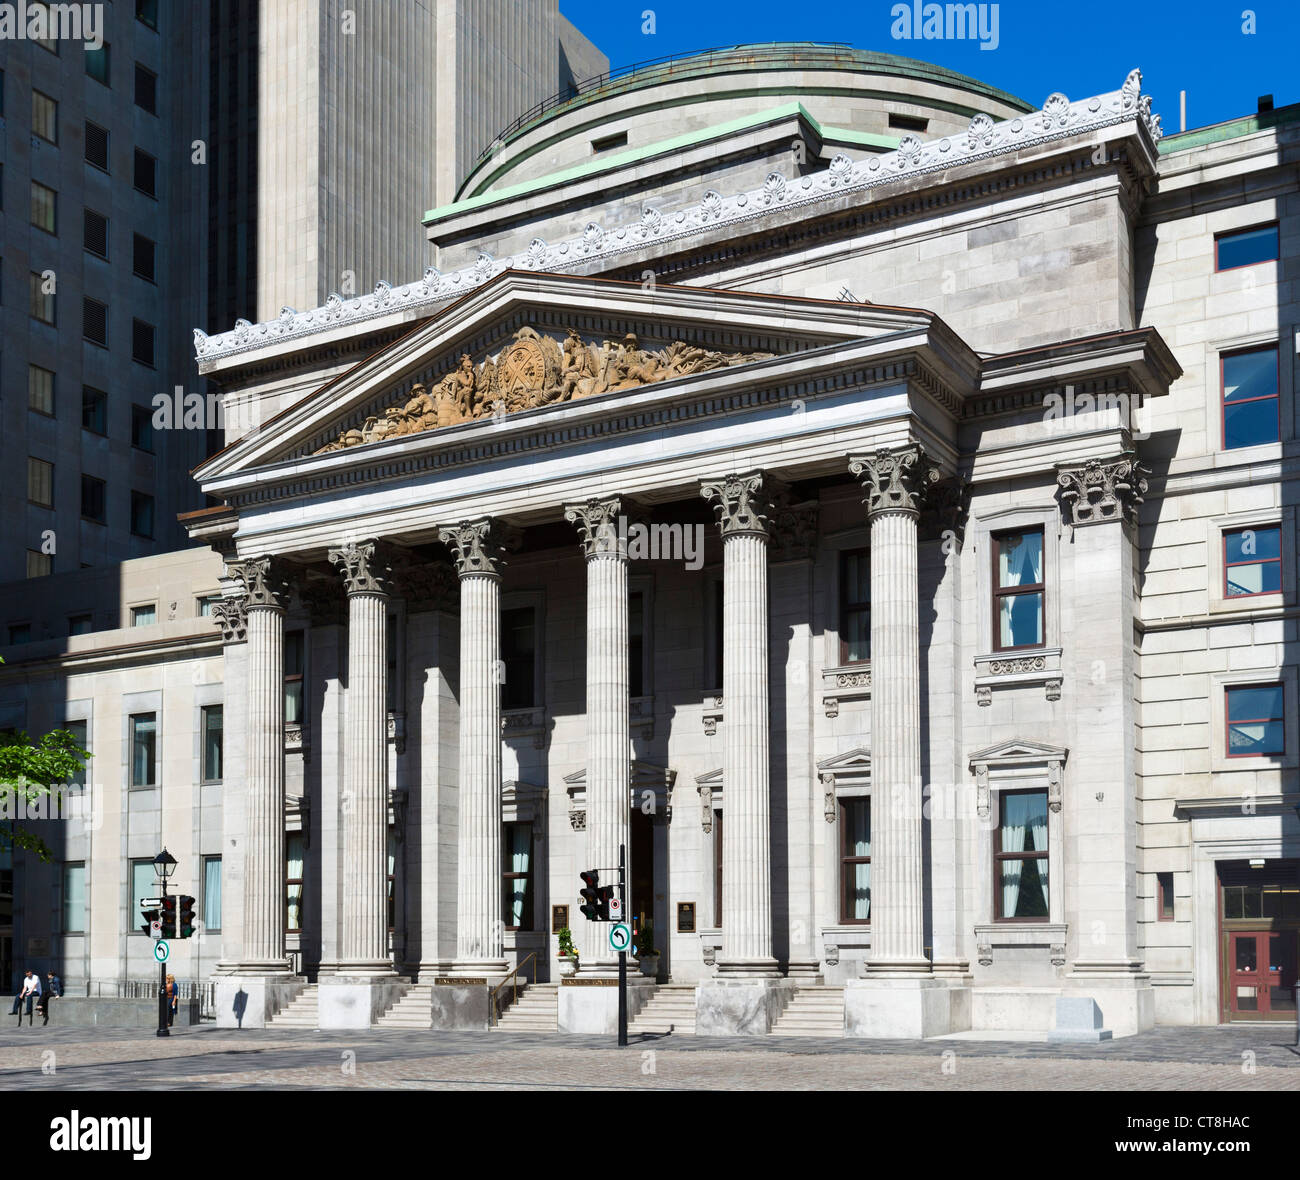 L'édifice de la Banque de Montréal sur la Place d'armes, rue Saint-Jacques, Montréal, Québec, Canada Banque D'Images